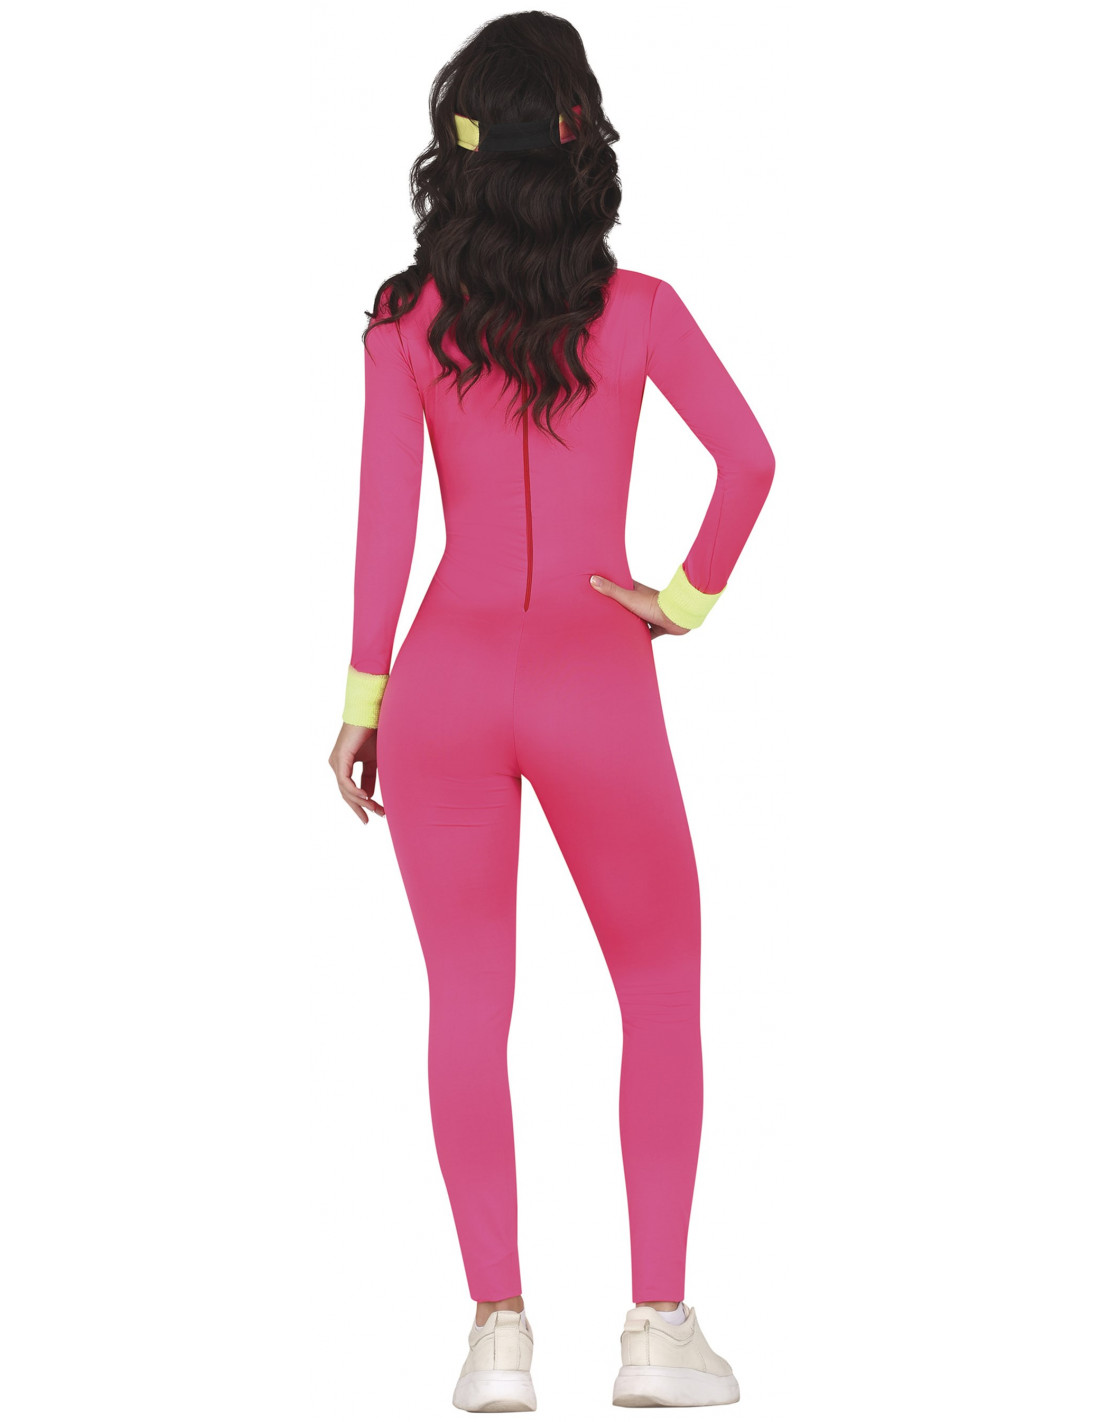 Comprar Disfraz de Ken Patinador - Disfraces Barbie Pelicula online